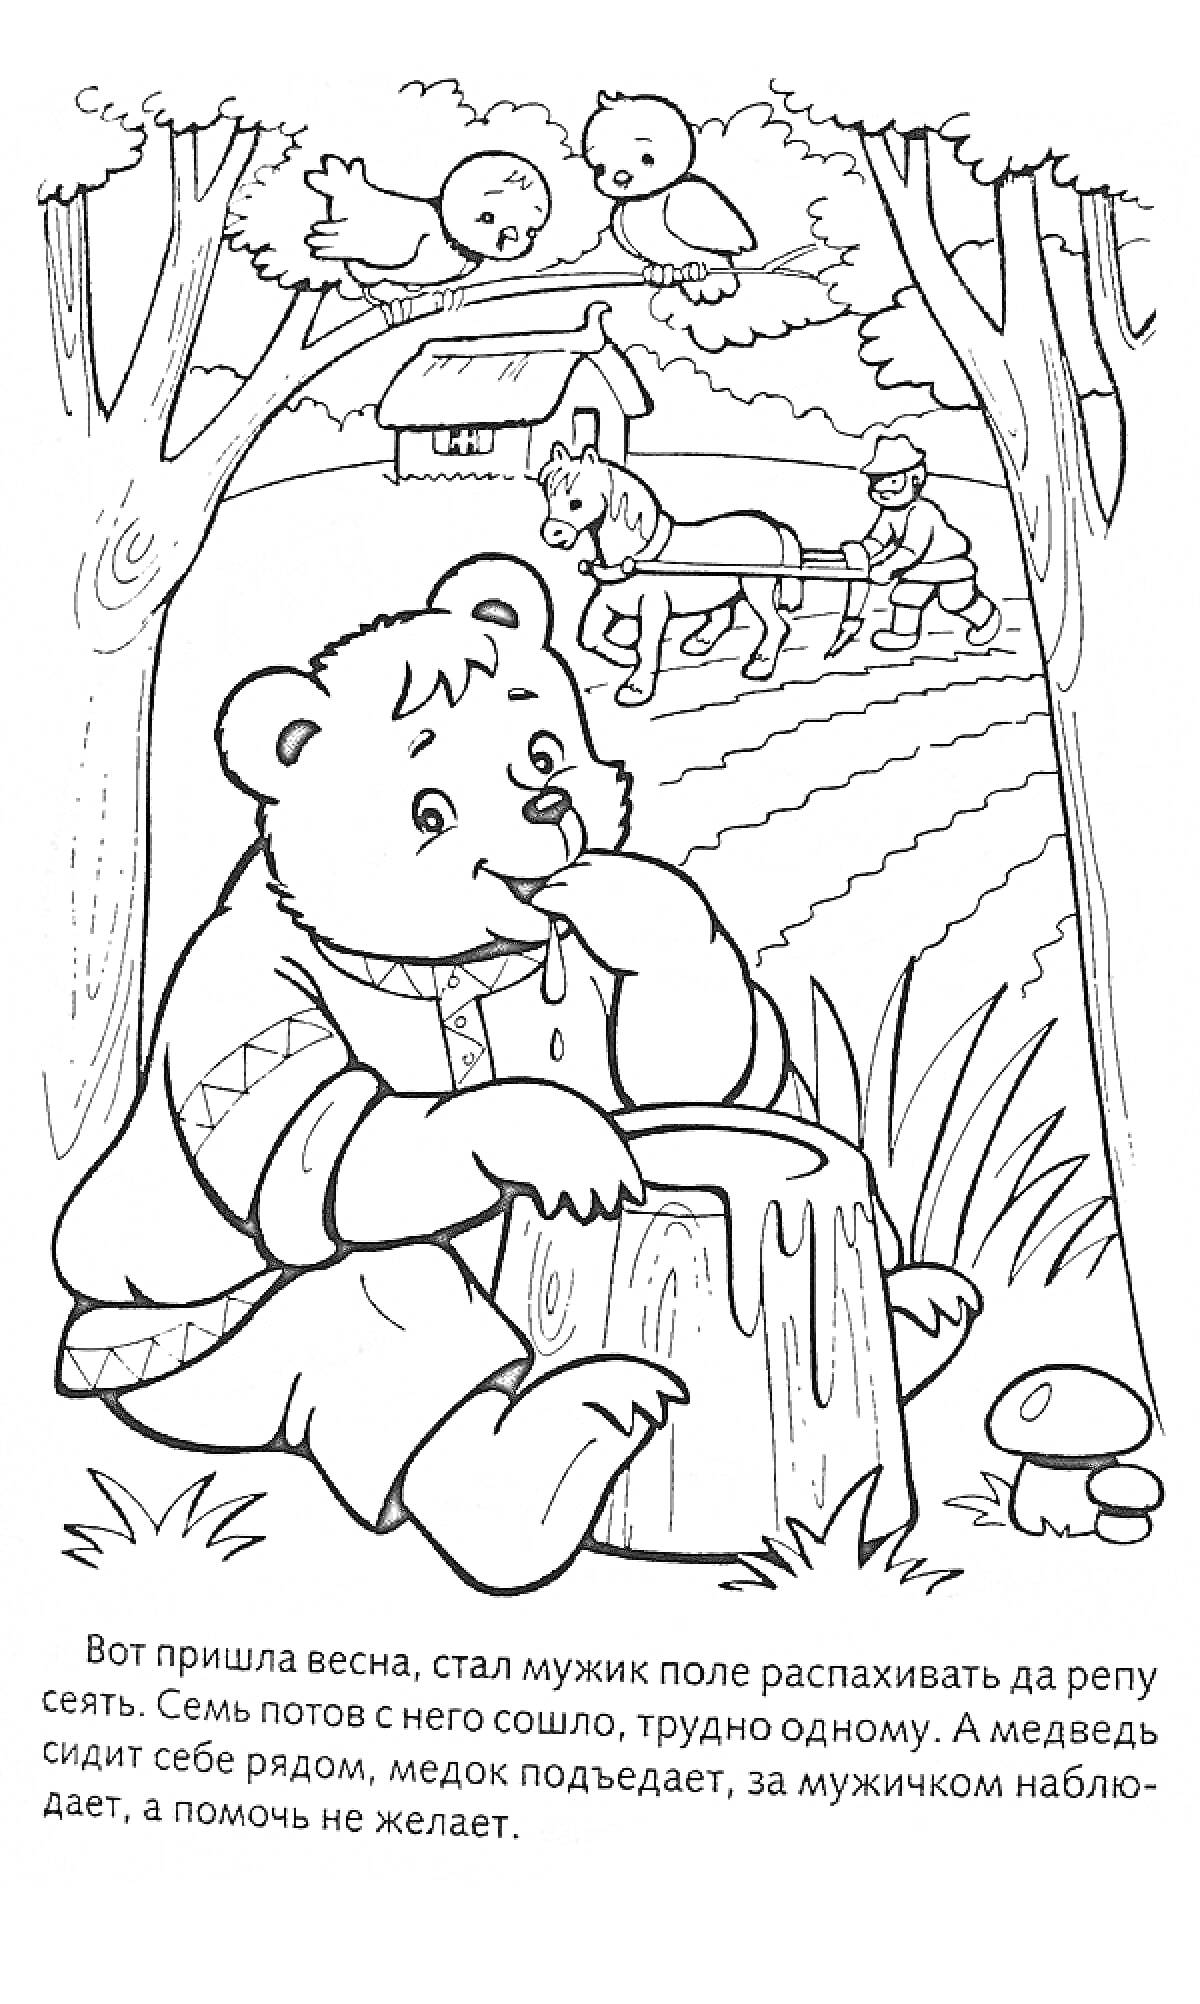 Раскраска Медведь ест мед на пне, мужик пашет поле с лошадьми, дерево, птички, грибы